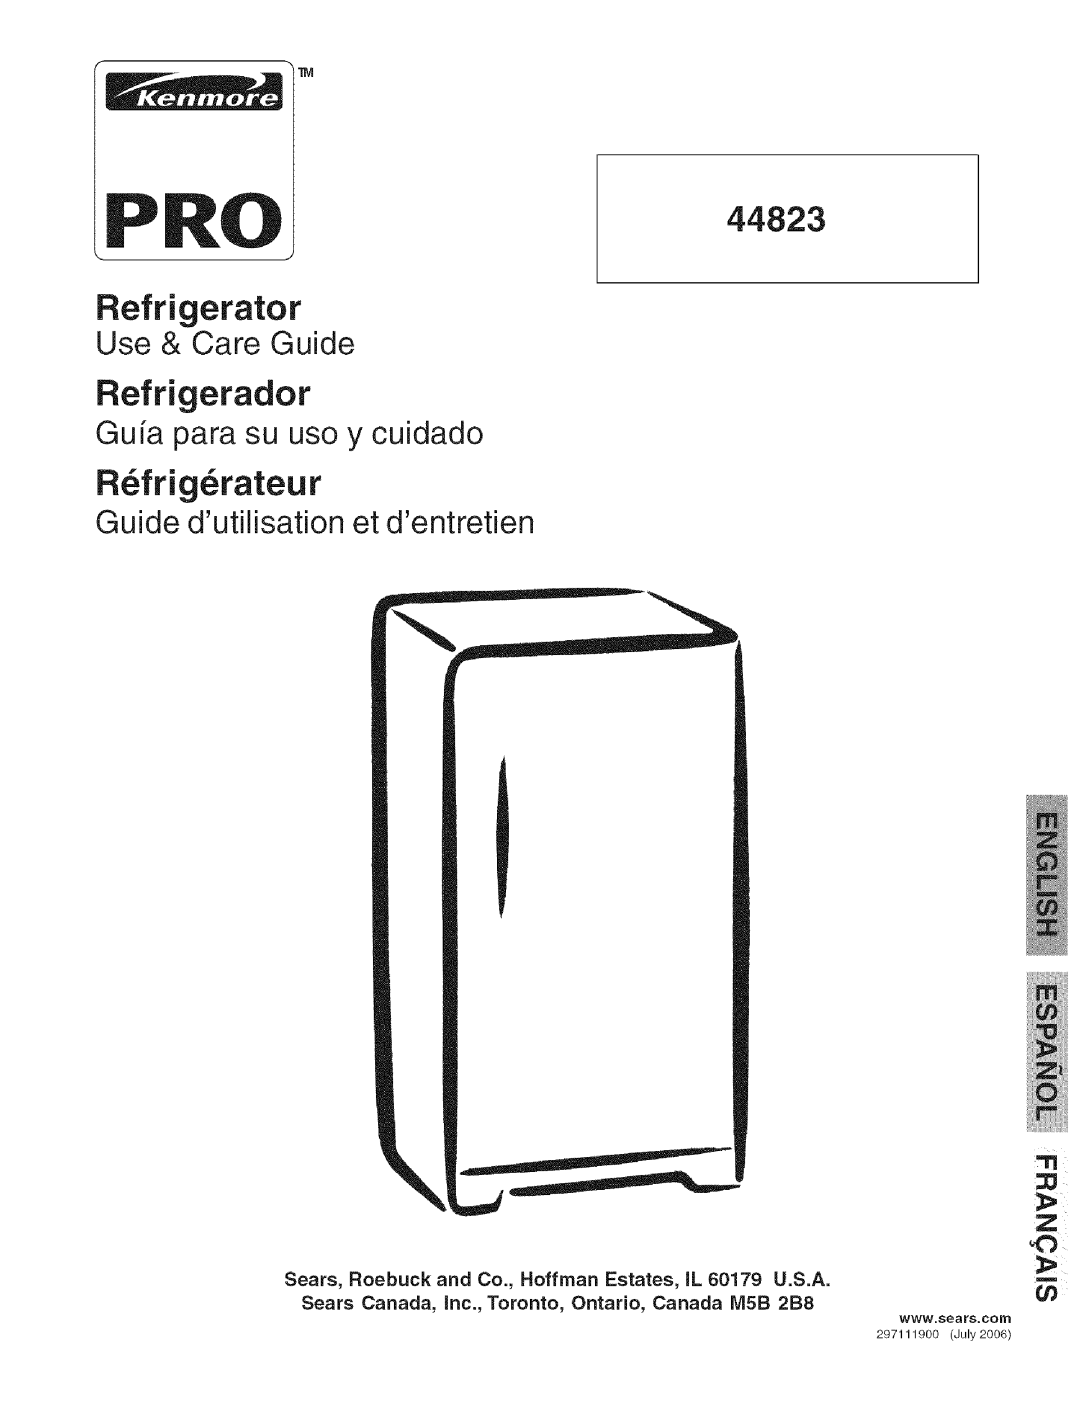 Kenmore 44823 manual Refrigerador, R frig rateur, Refrigerator Use & Care Guide, Guia para su uso y cuidado 